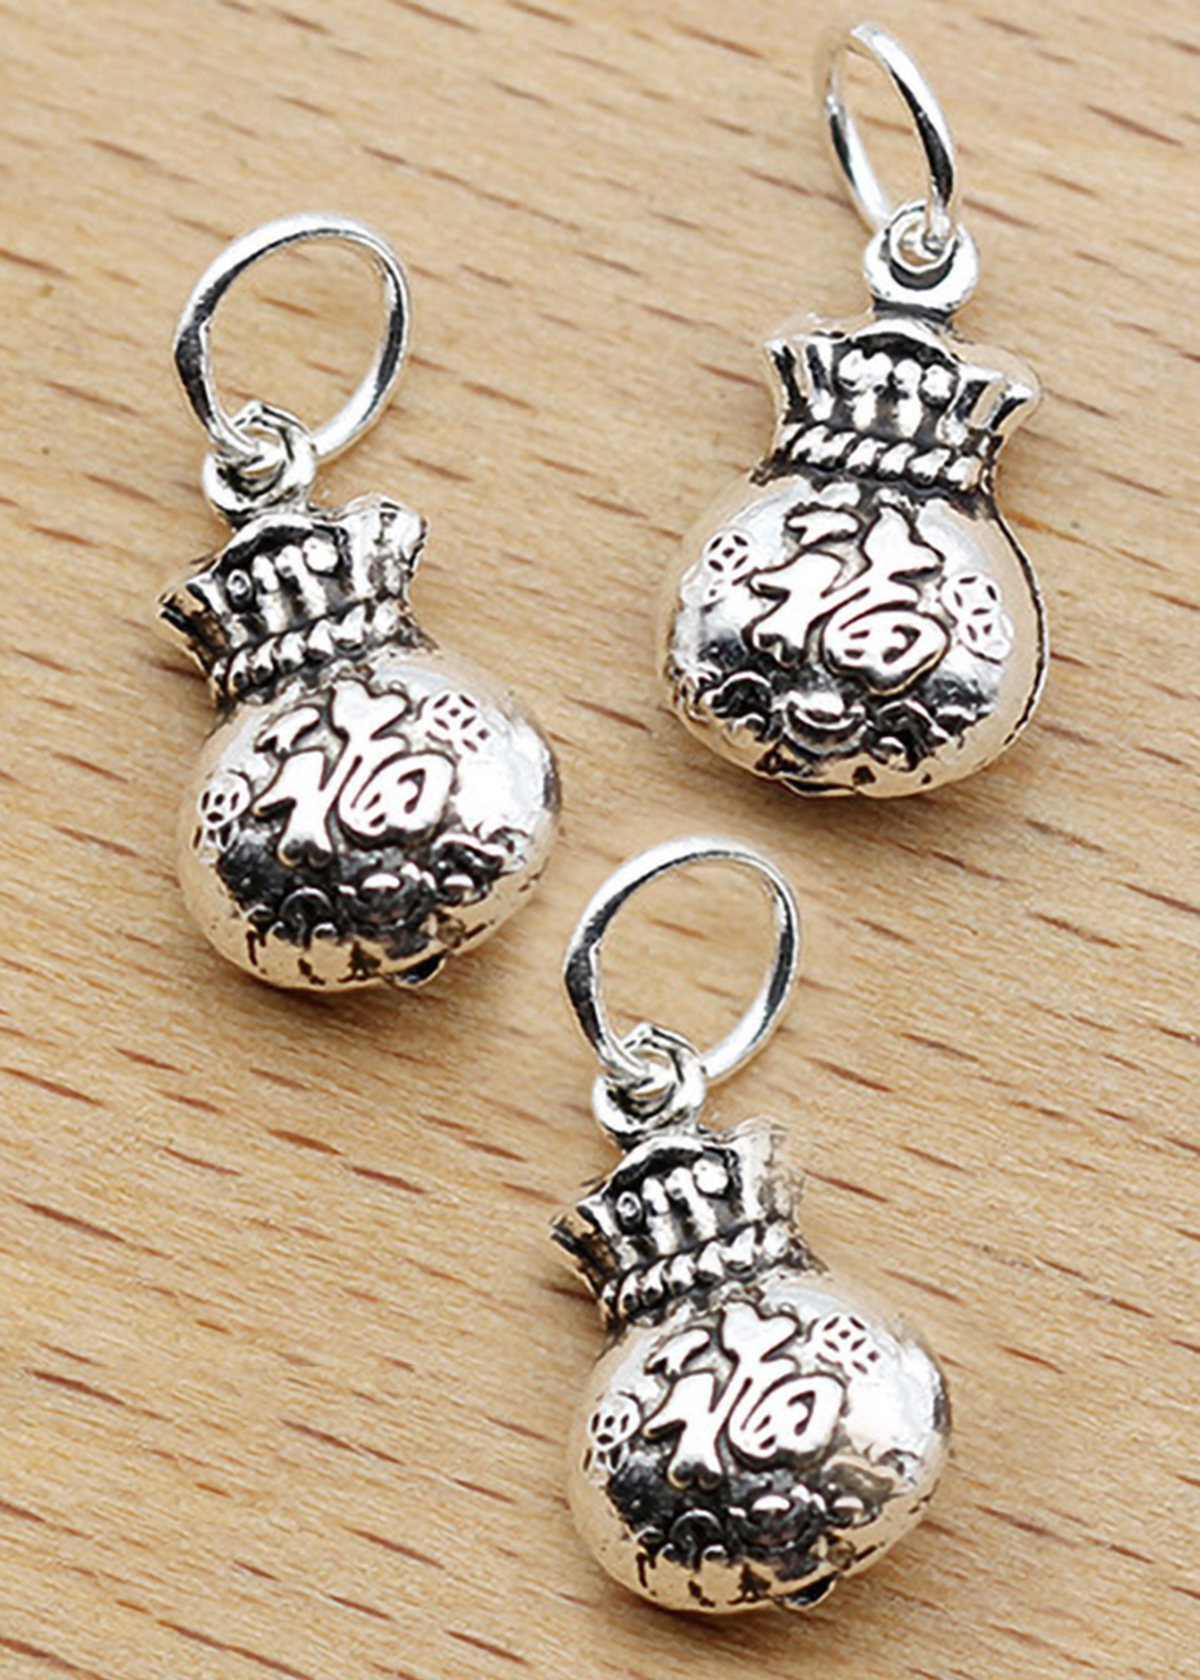 Combo 2 cái charm bạc hình túi tiền treo - Ngọc Quý Gemstones